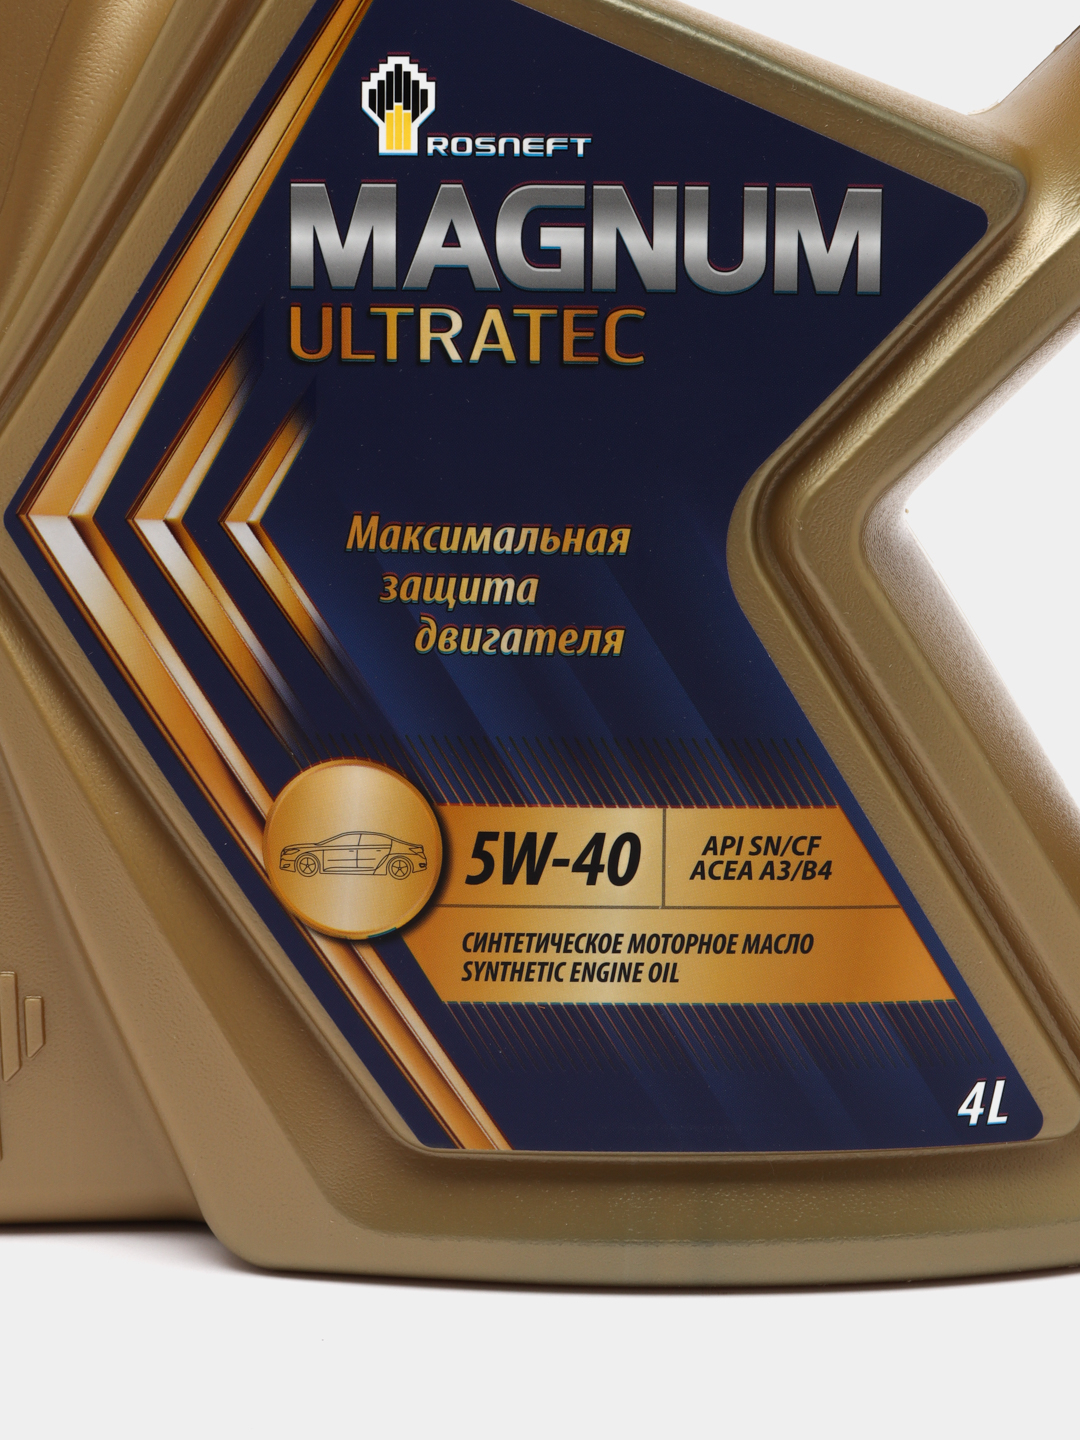 Масло роснефть магнум ультратек купить. Rosneft Magnum Ultratec 5w-30 синтетическое 4 л. Масло Magnum Ultratec 5w-40. Масло Роснефть Magnum Ultratec. Масло Роснефть Магнум рейсинг 5w30.